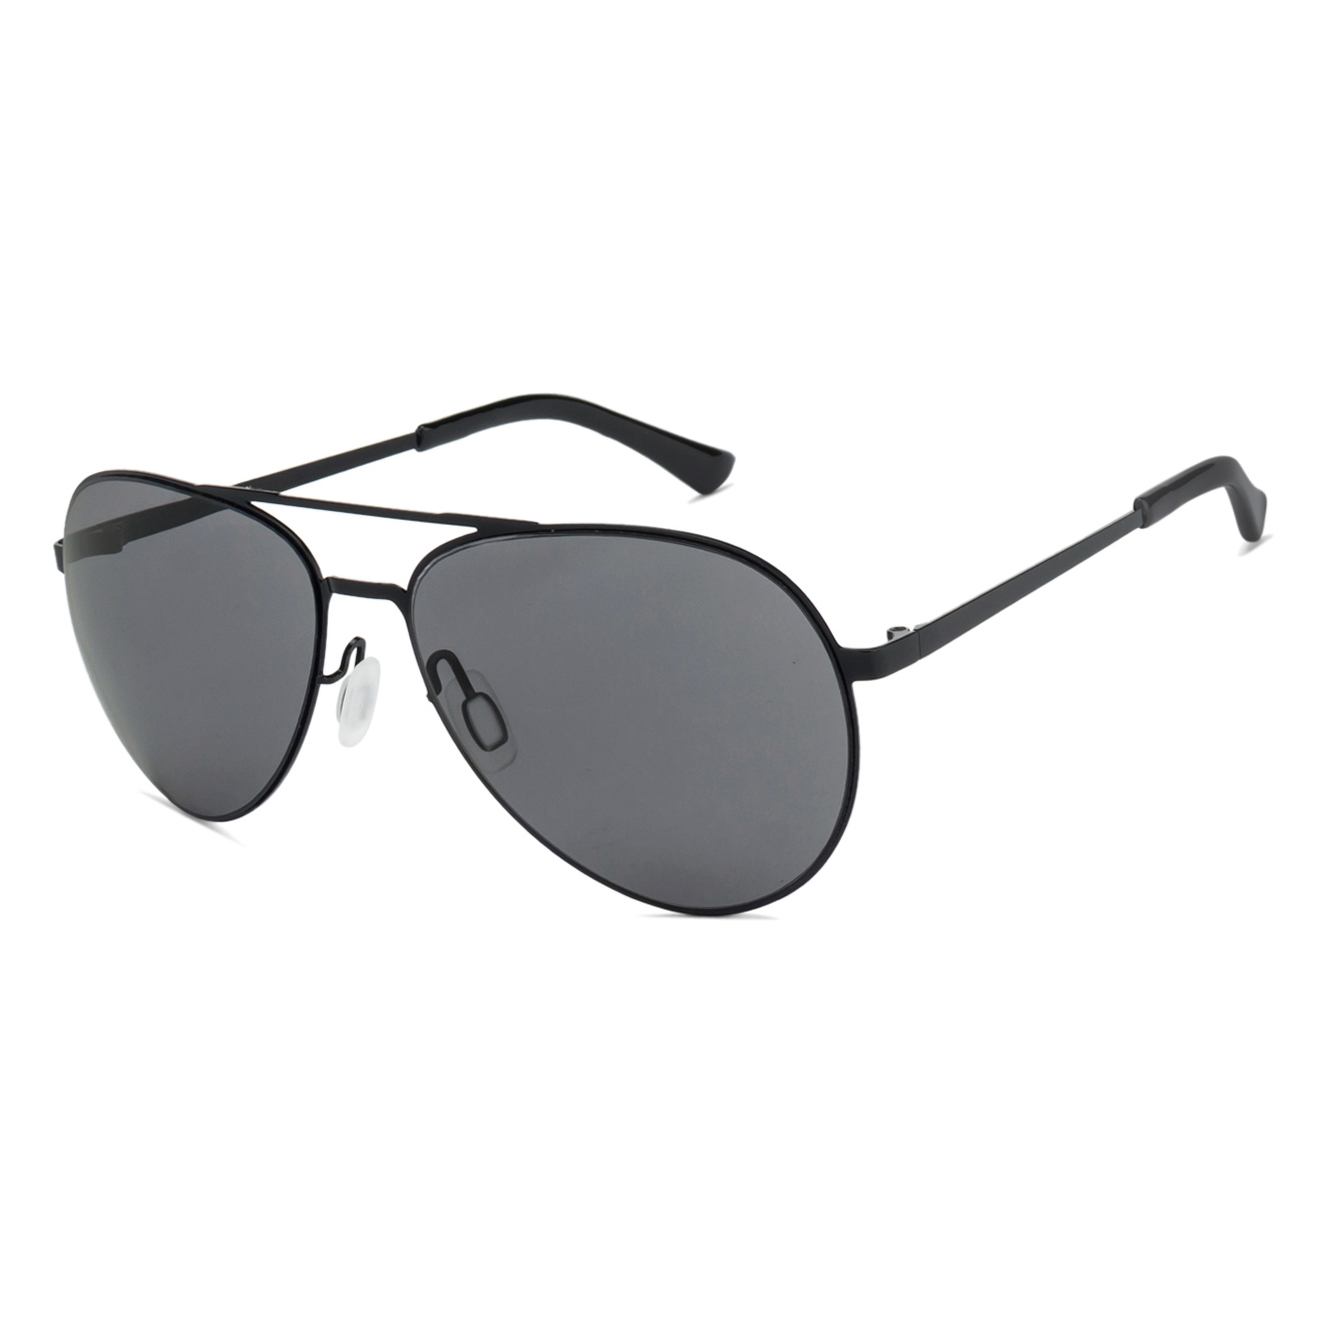 Κλασικά μεταλλικά γυαλιά ηλίου Aviator 21408